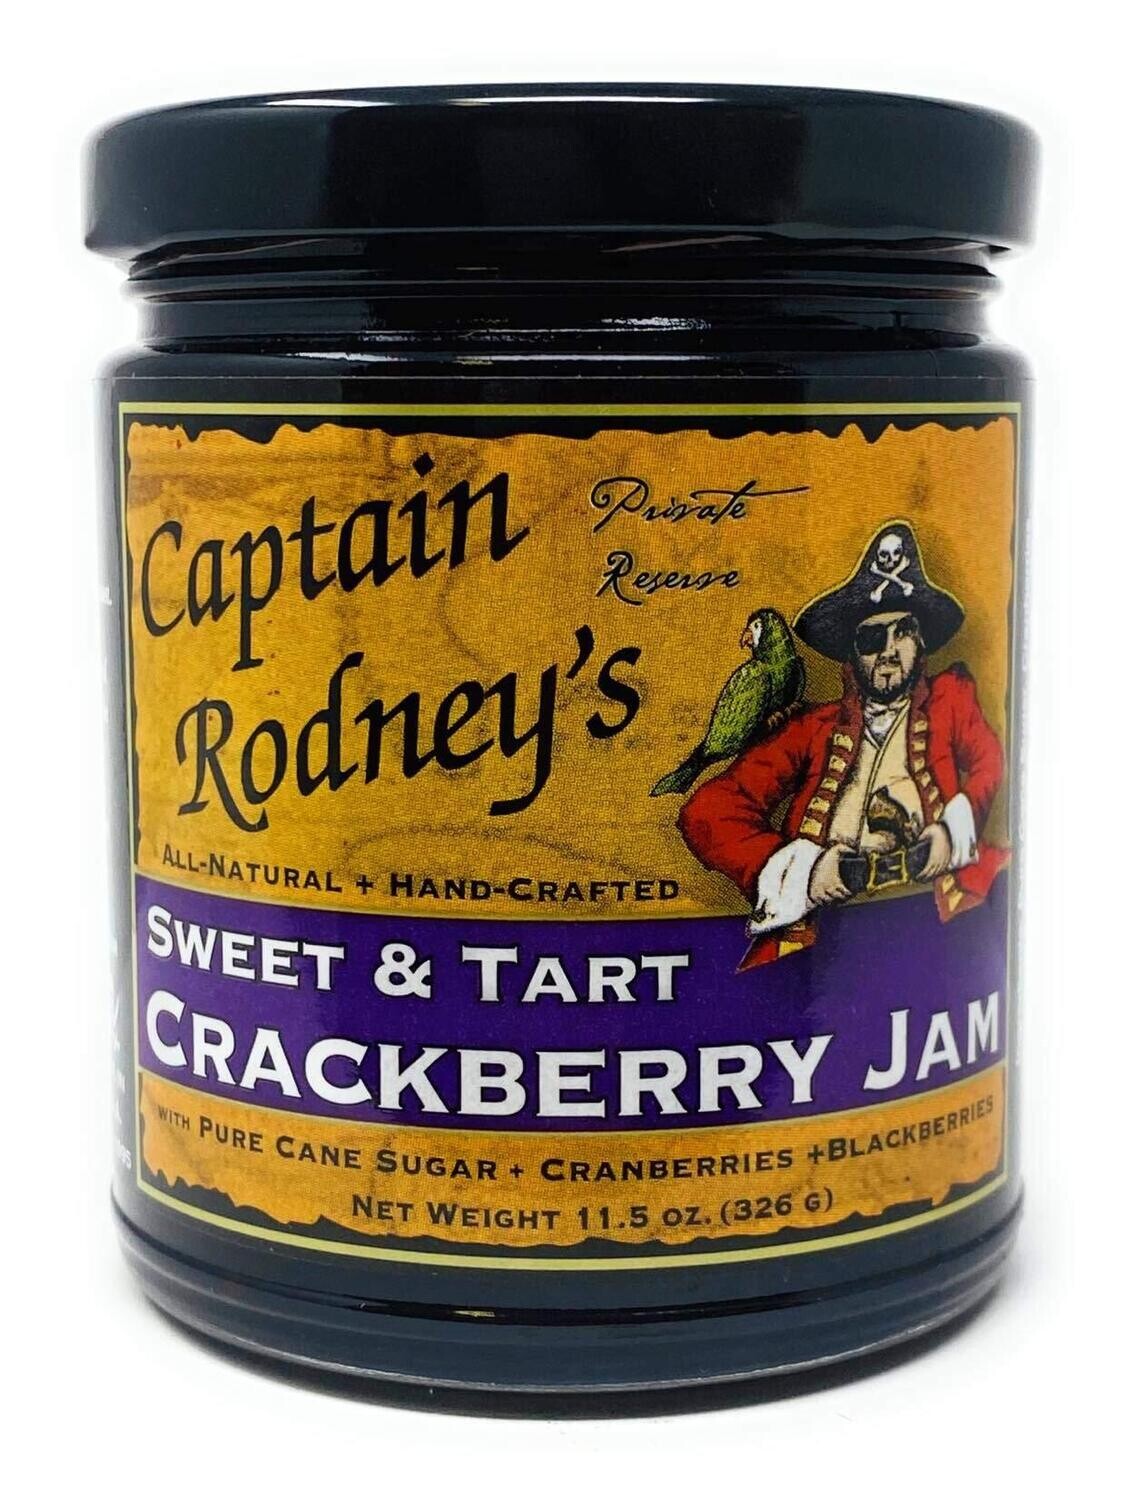 Captain Rodney's Crackberry Jam